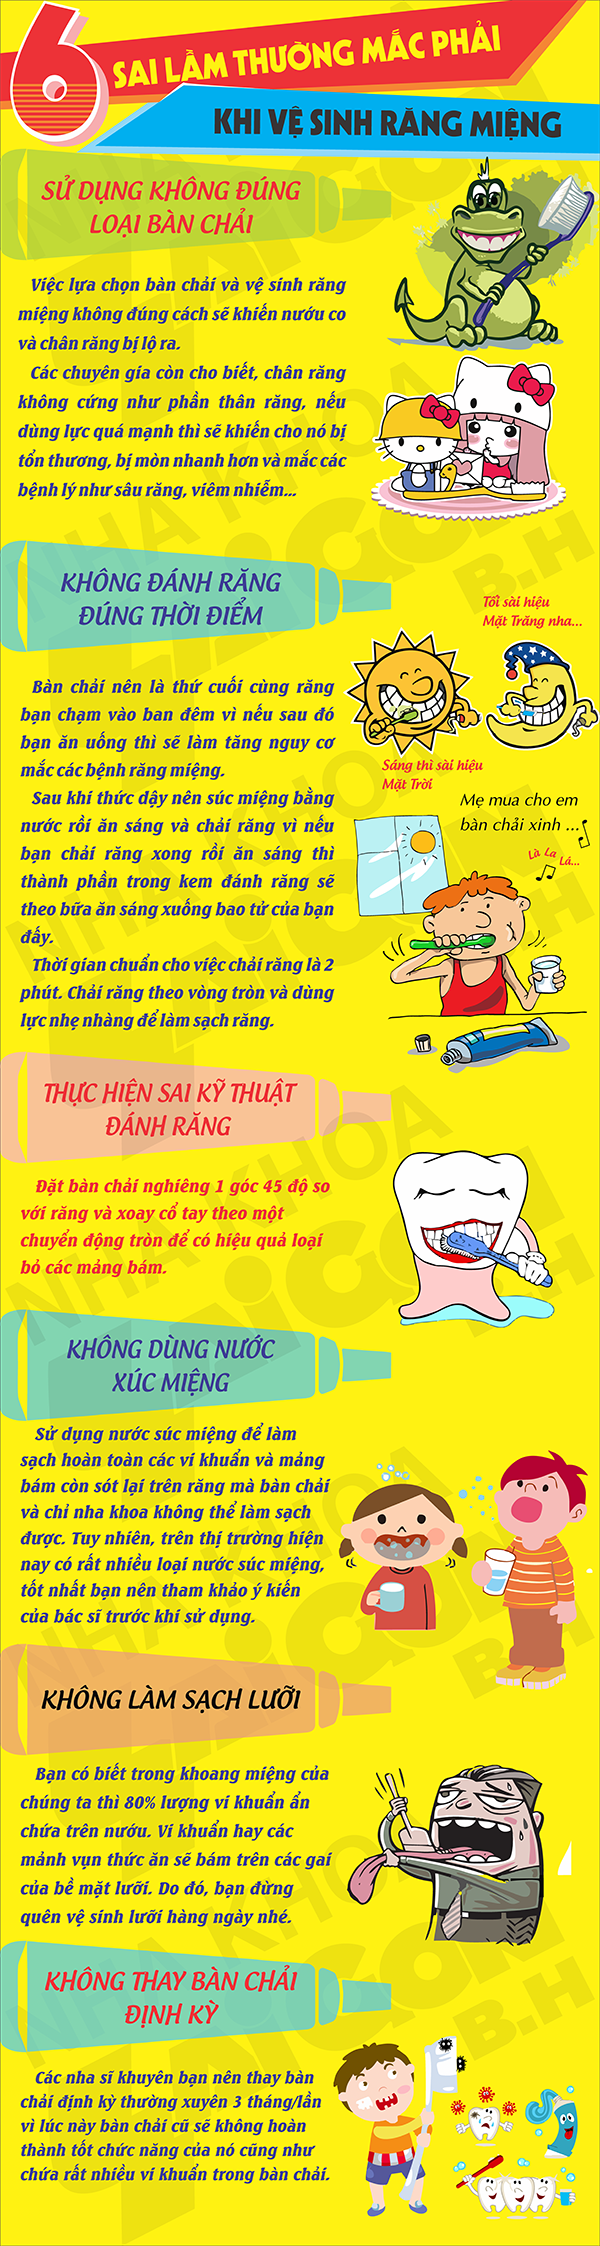 6 sai lầm thường mắc khi vệ sinh răng miệng